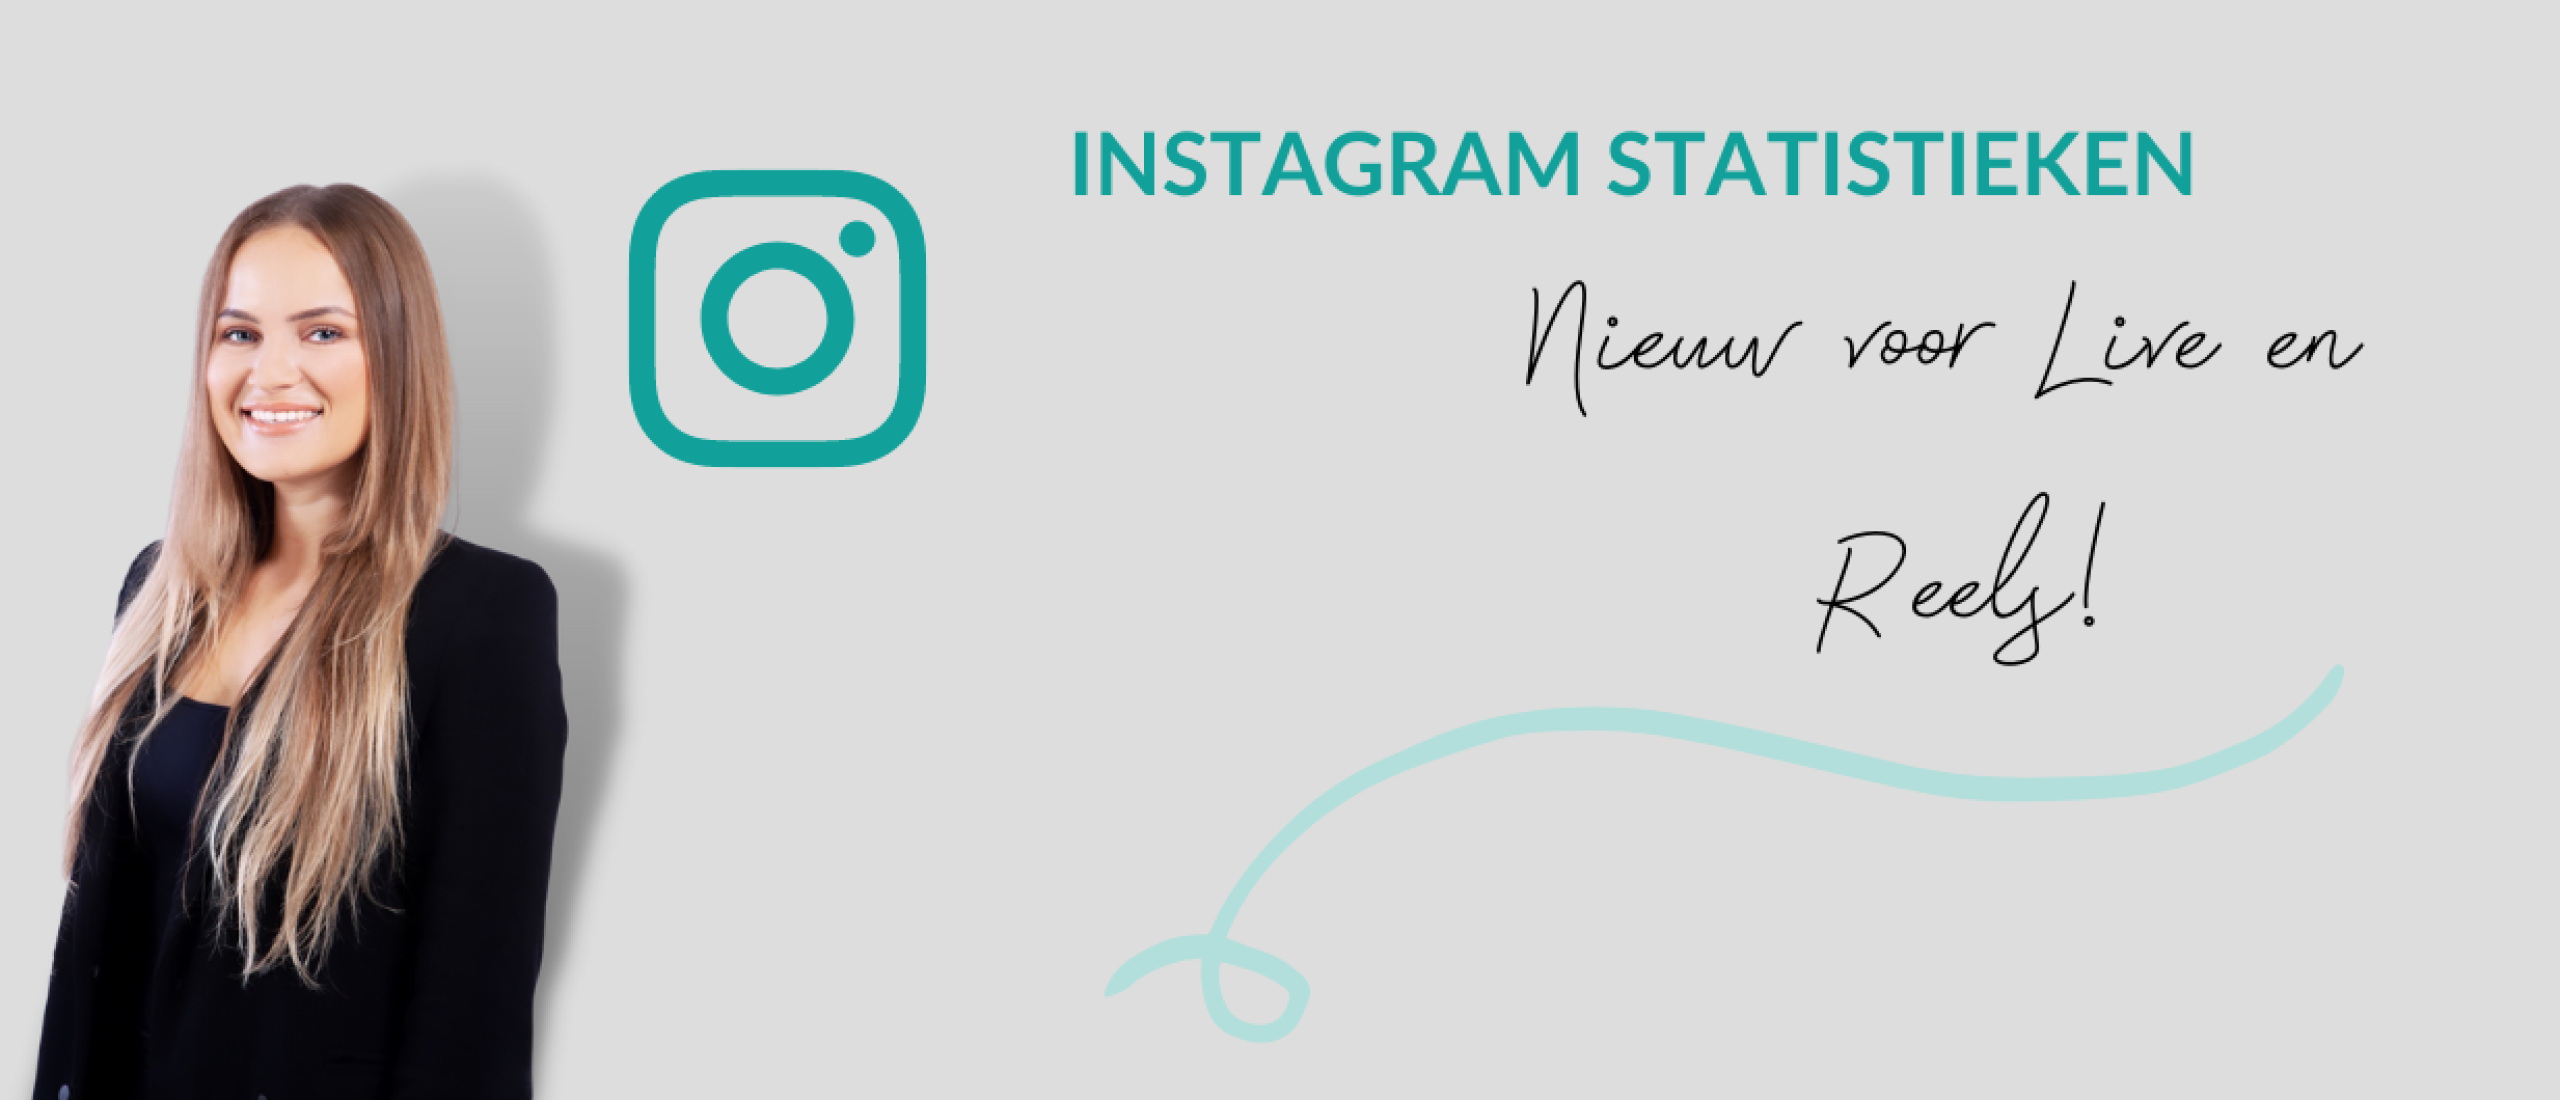 Instagram statistieken: nieuw voor live en reels!